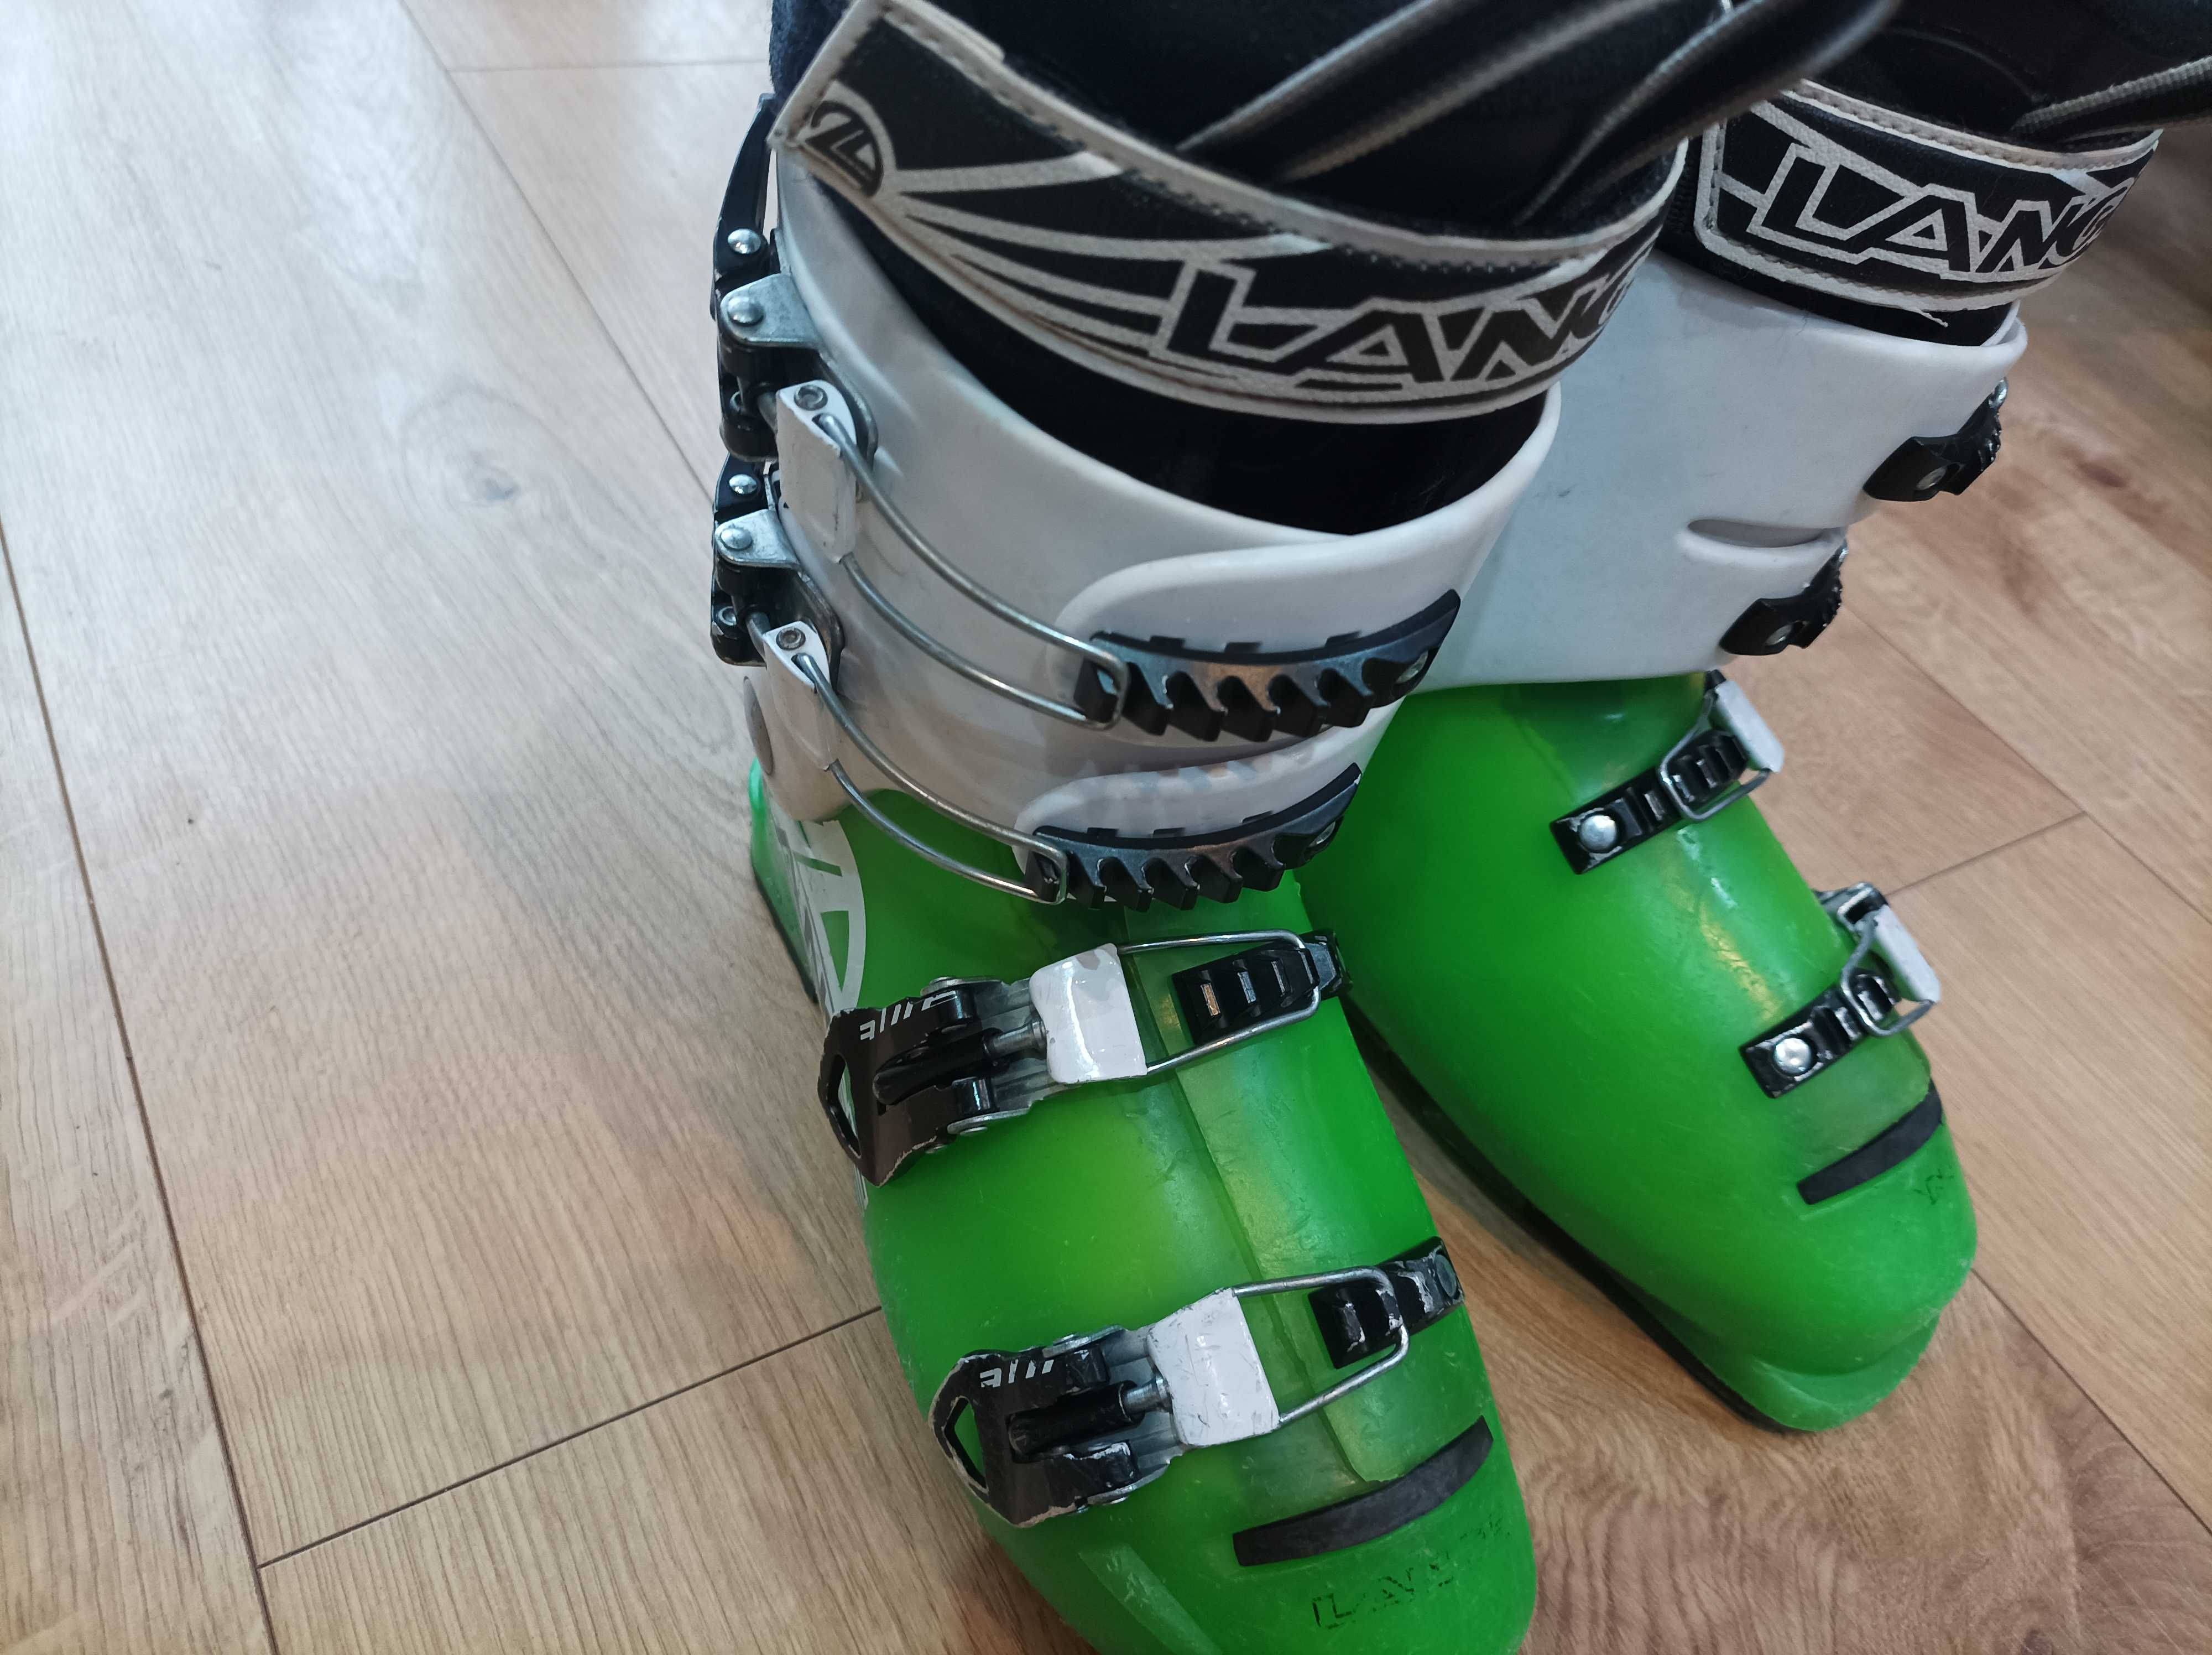 Buty narciarskie dziecięce Lange RX roz. 24,5 cm